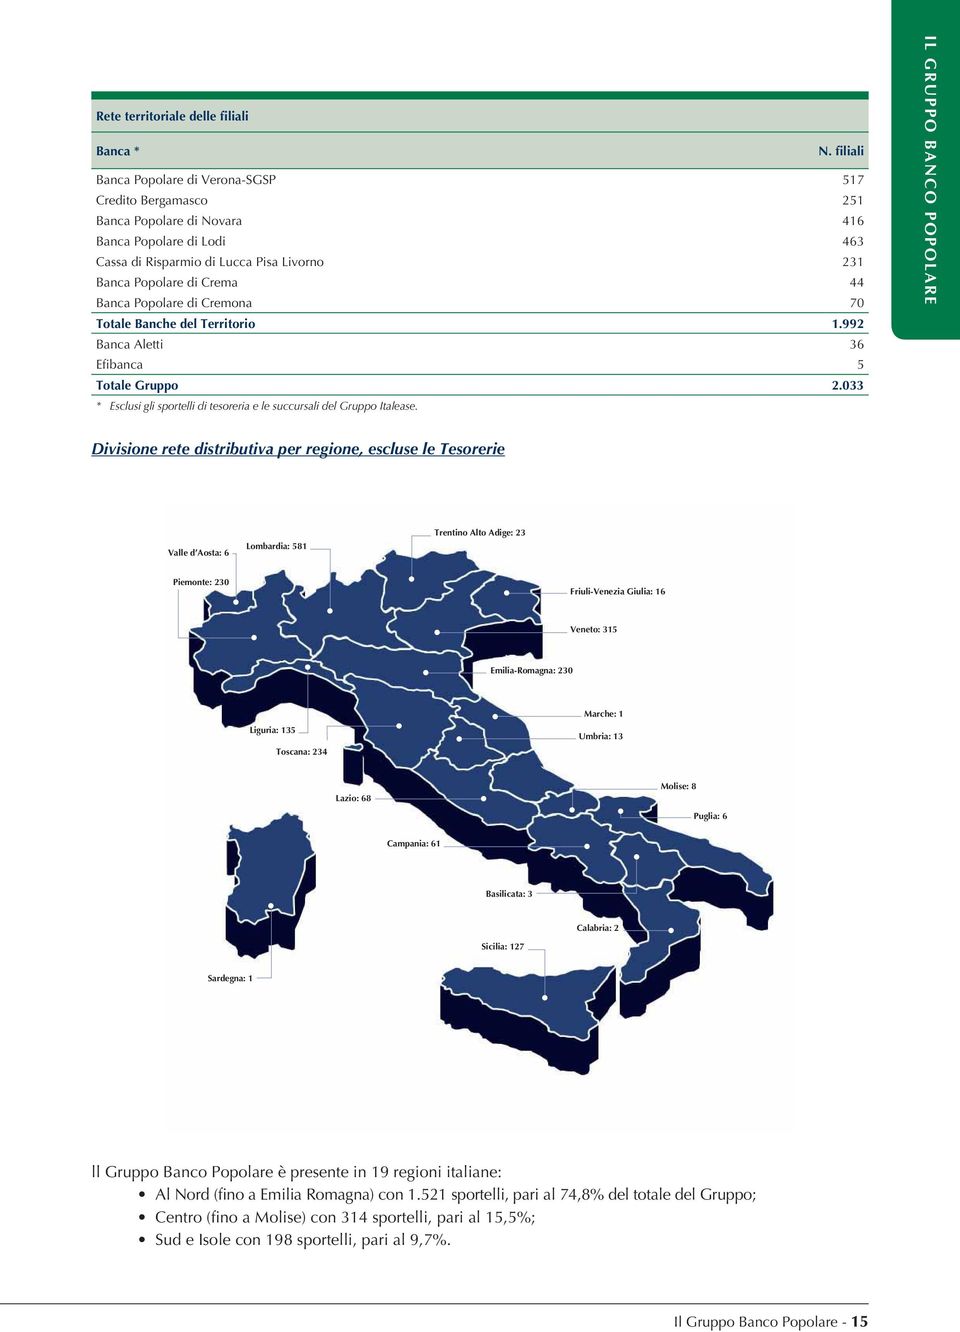 Popolare di Cremona 70 Totale Banche del Territorio 1.992 Banca Aletti 36 E banca 5 Totale Gruppo 2.033 * Esclusi gli sportelli di tesoreria e le succursali del Gruppo Italease.